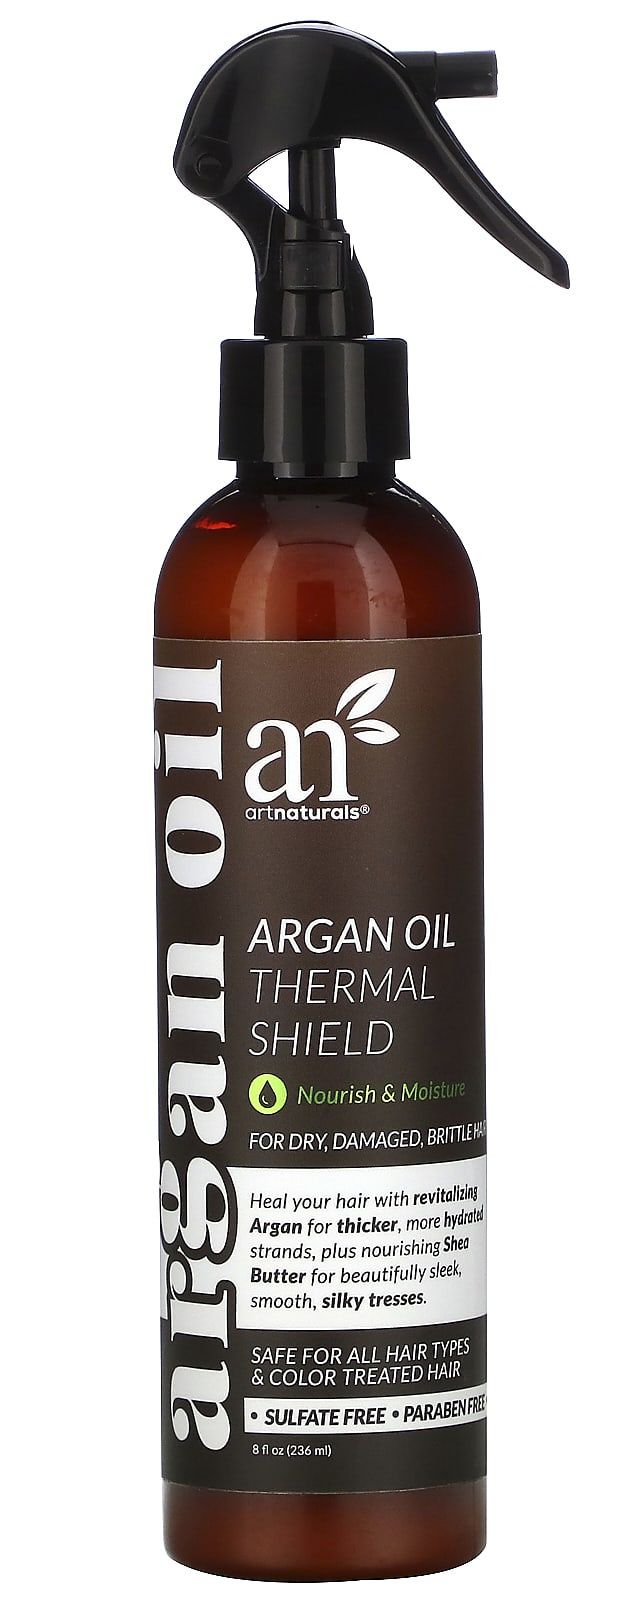 artnaturals Argan Oil Thermal Shield